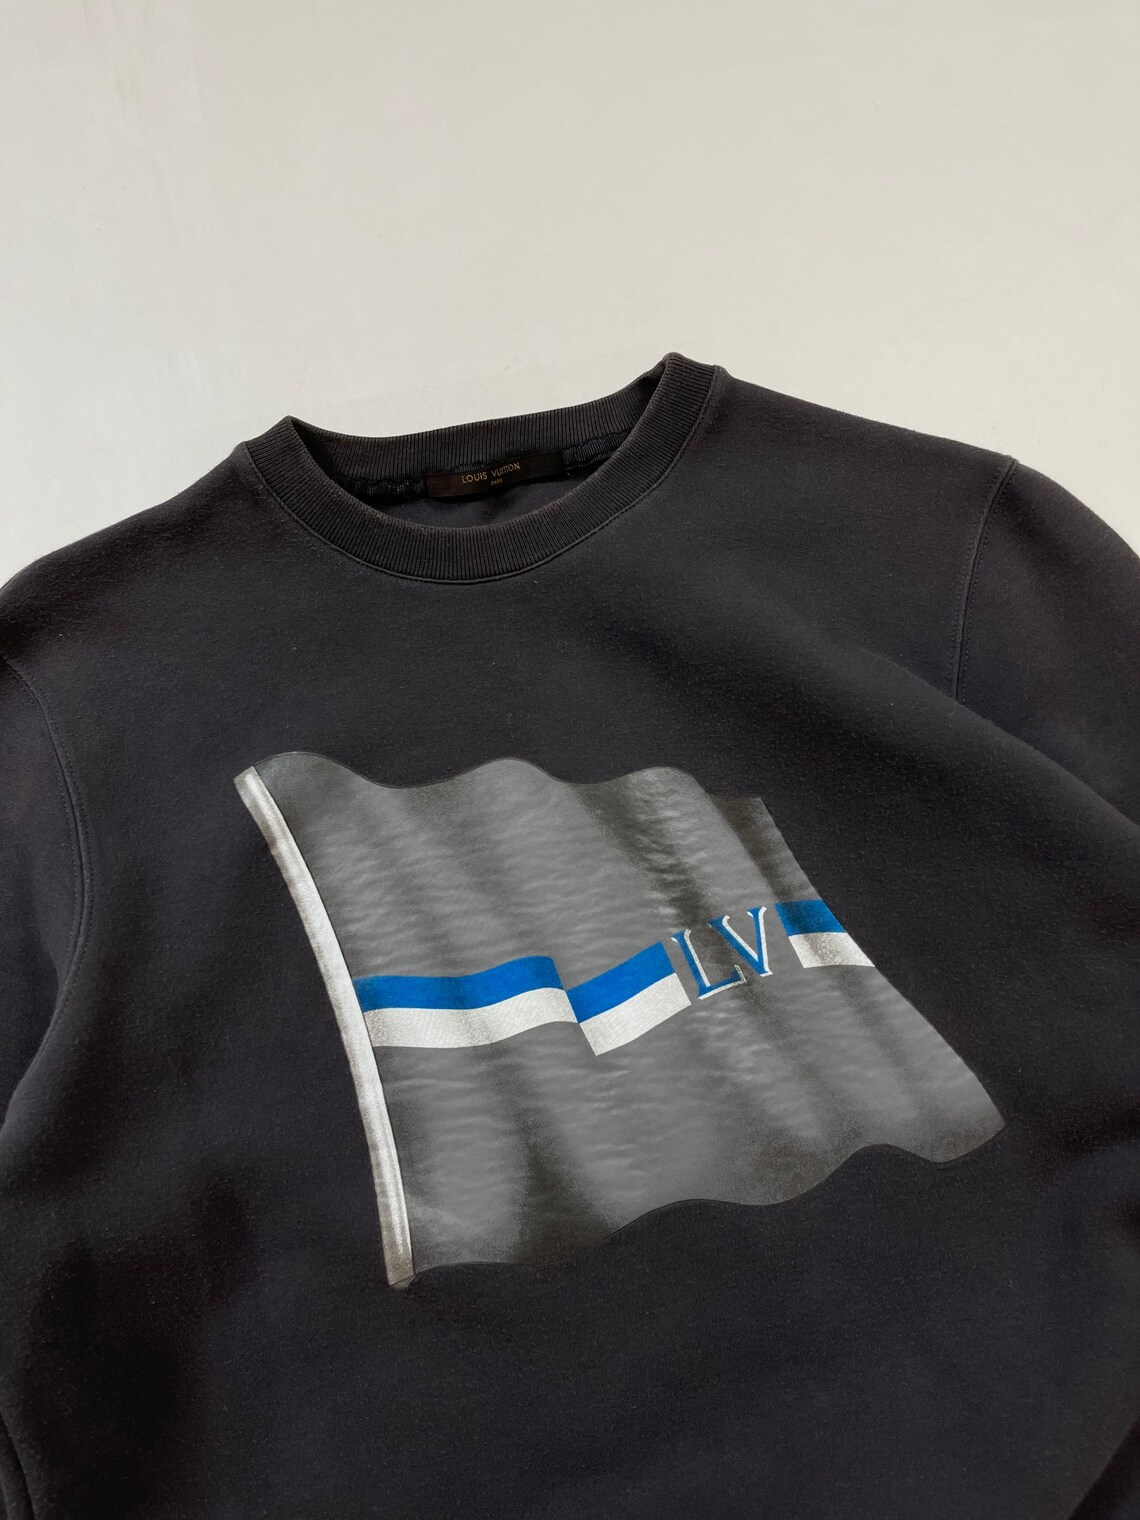 Louis Vuitton sweatshirt big logo 90s vintage crewneck brown | Etsy